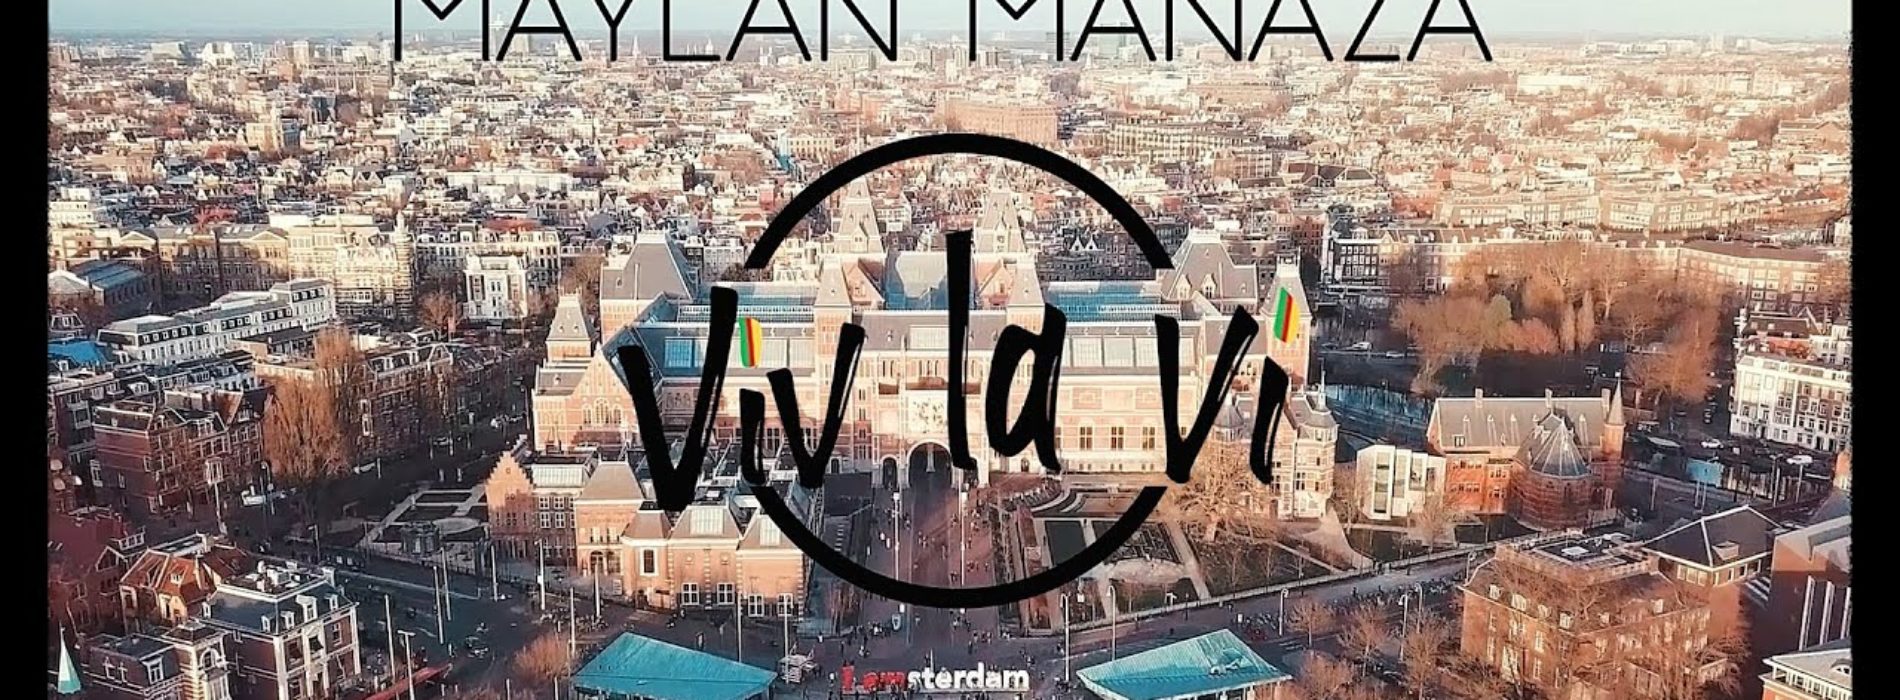 MAYLAN MANAZA  » VIV LA VI  » #REGGAE – Mai 2020